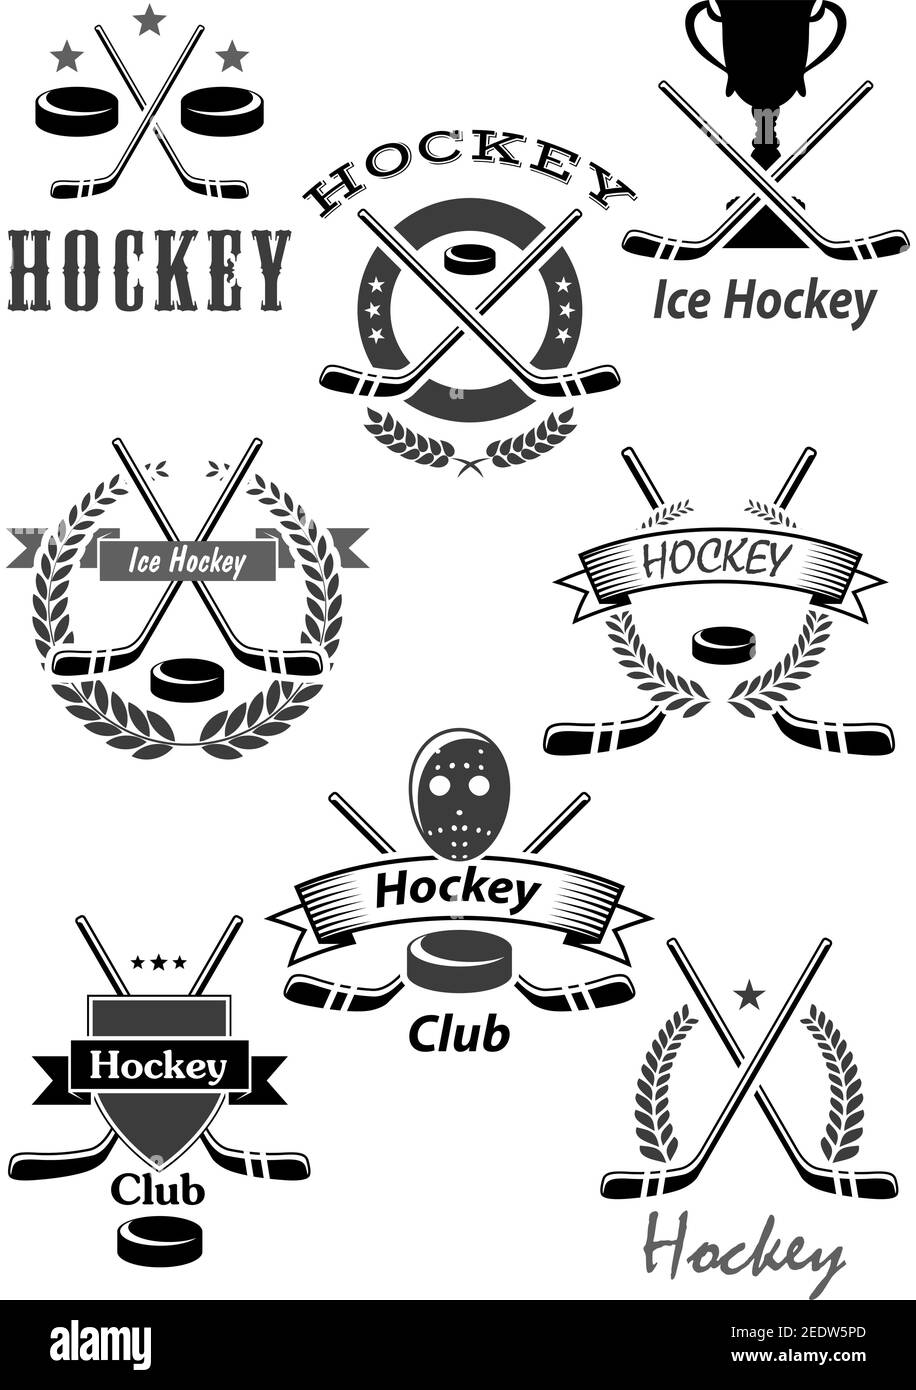 Eishockey-Vektor-Symbole oder Championship-Award-Embleme für Spielturnier. Symbole von Hockey Puck, Stick und Torwartmaske, Siegerpokal und Sieg l Stock Vektor